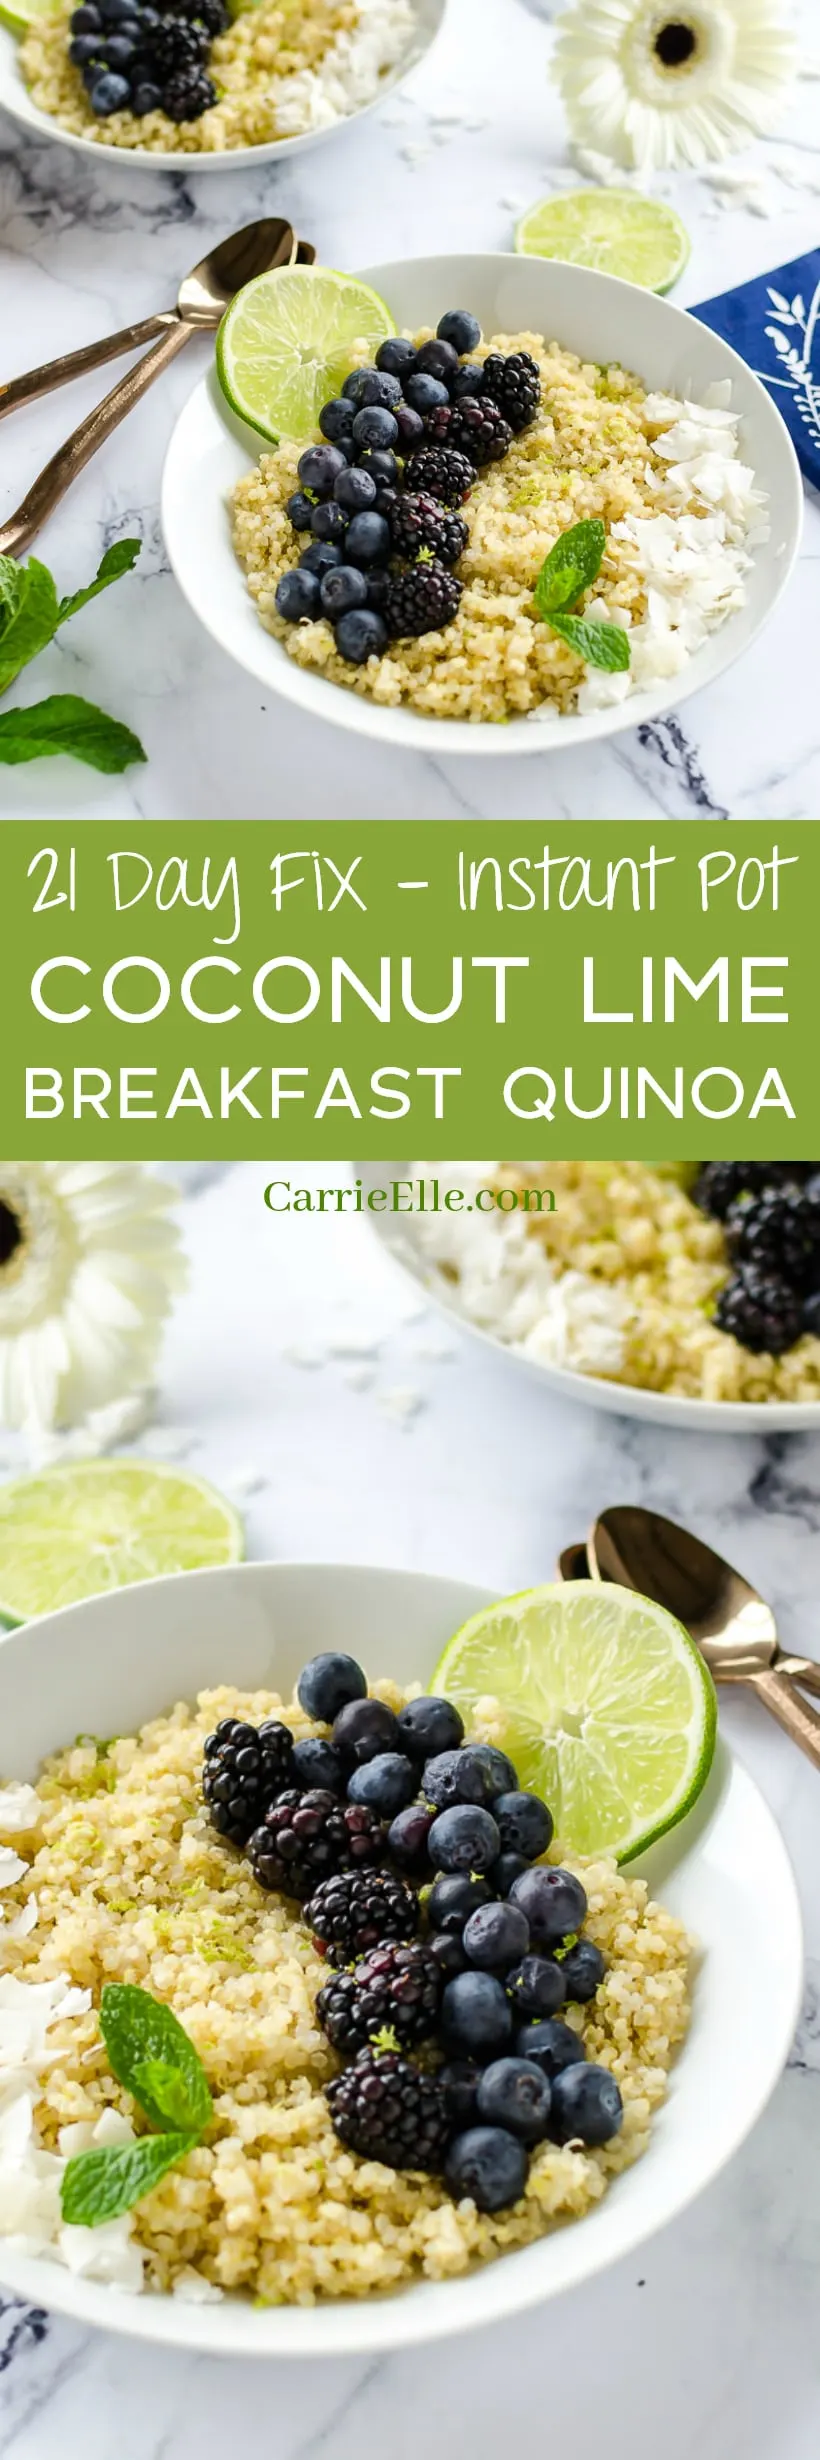 21 Day Fix Instant Pot Breakfast Quinoa